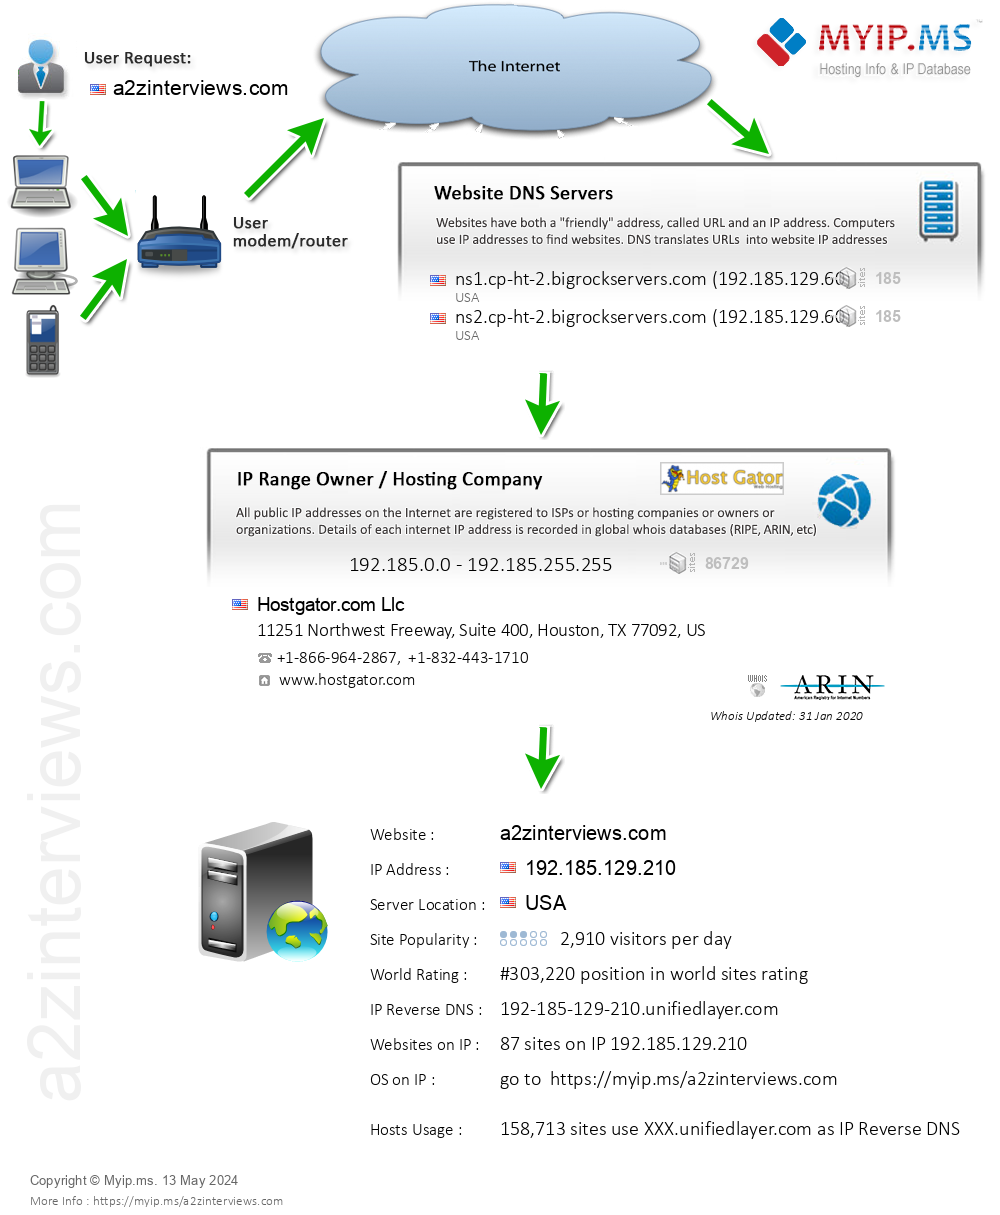 A2zinterviews.com - Website Hosting Visual IP Diagram